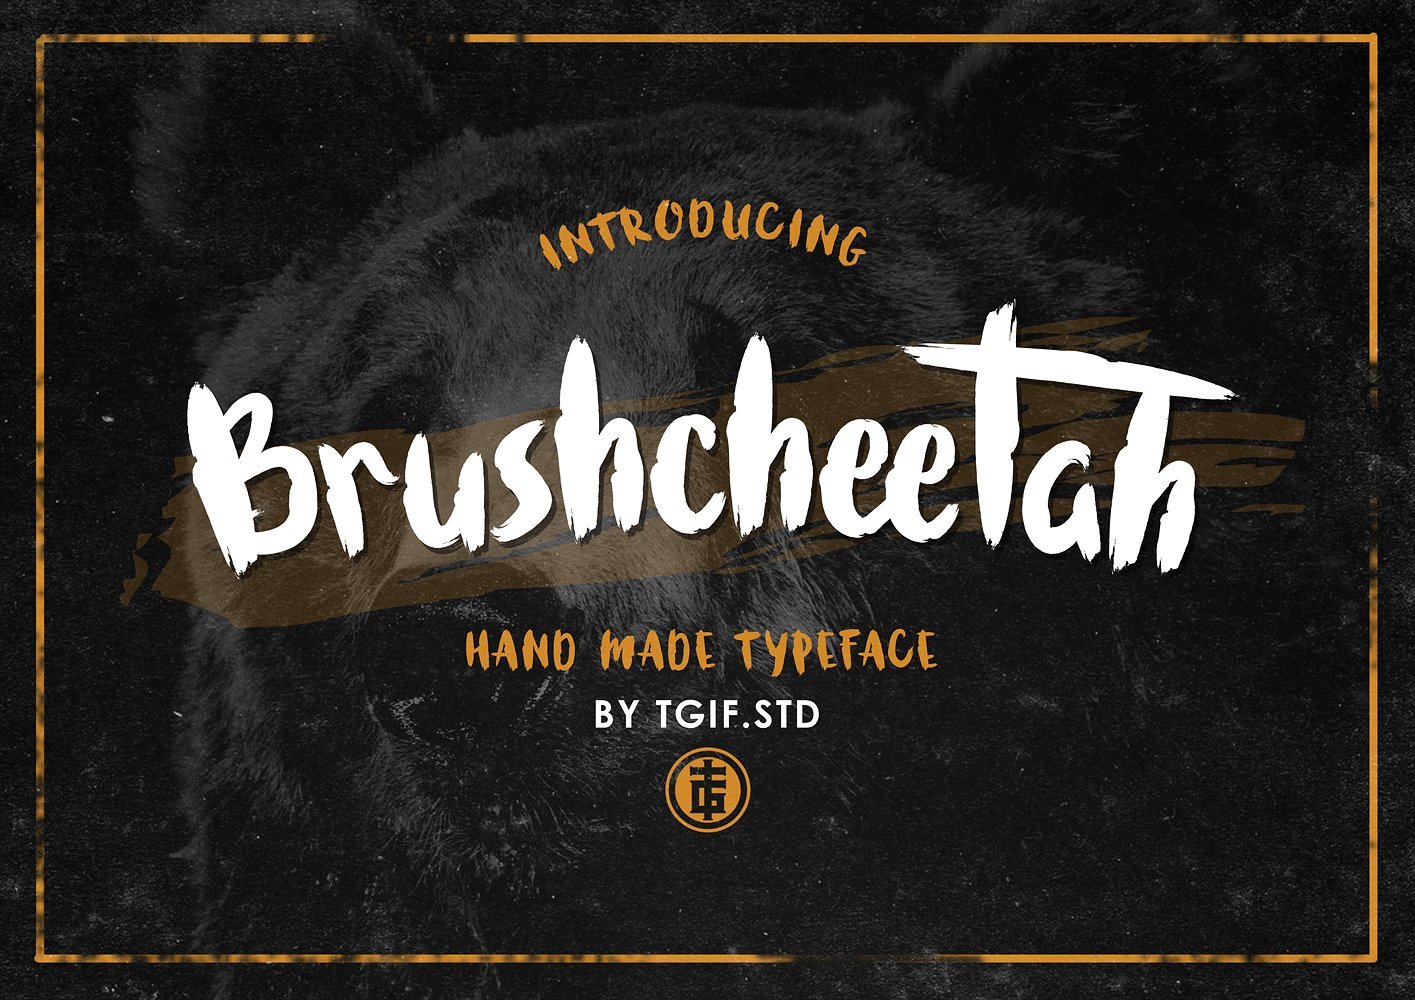 Brushcheetah